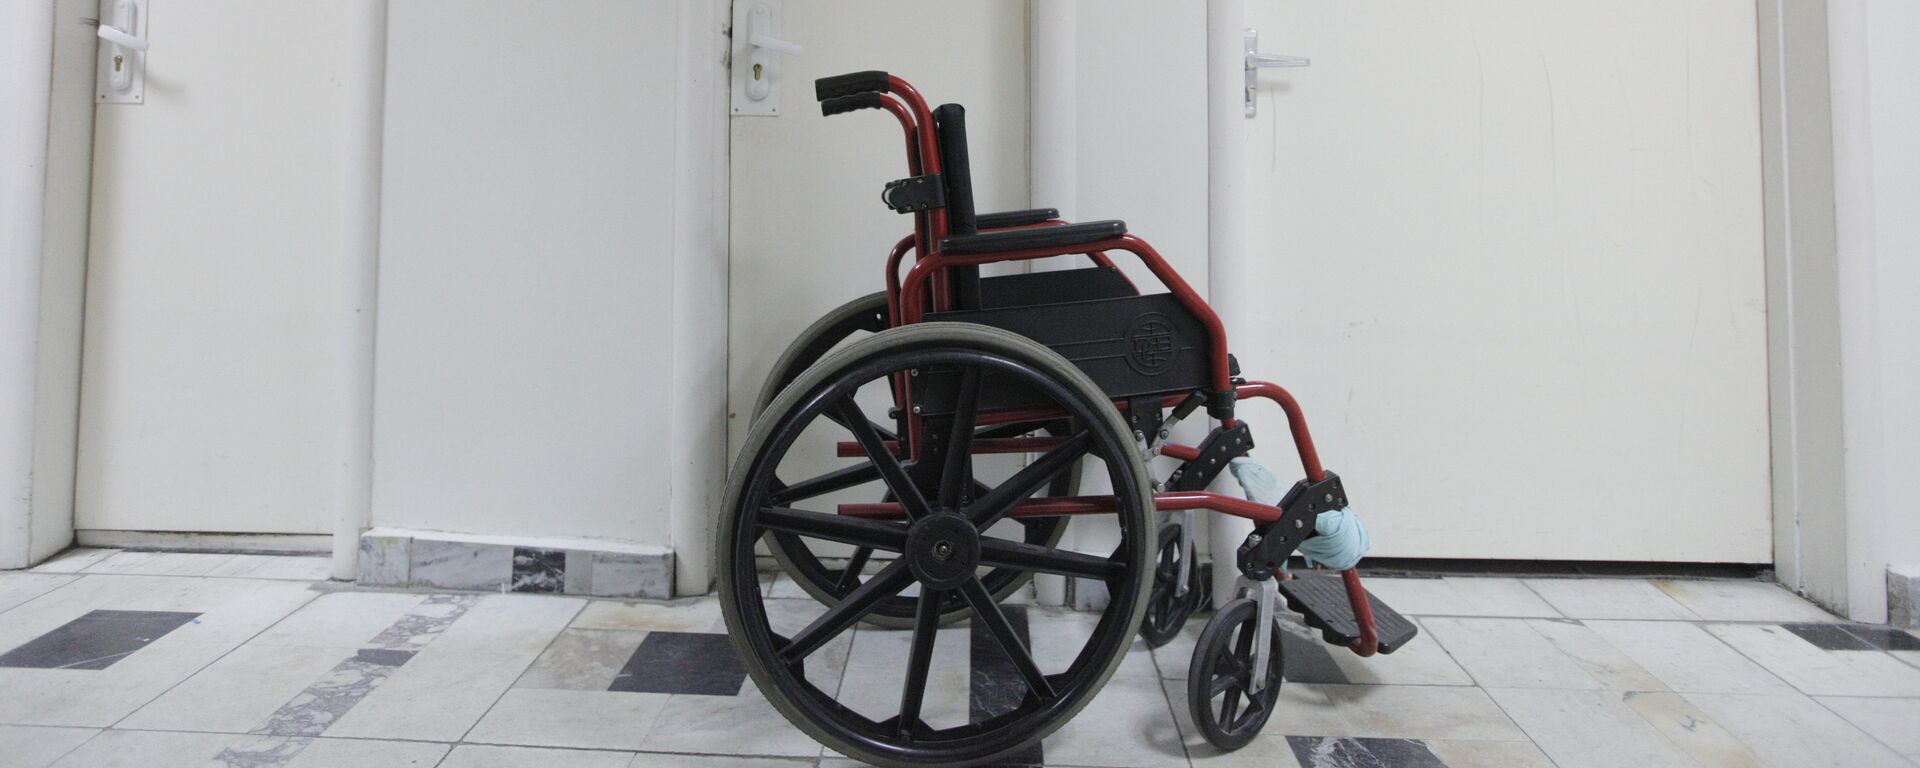 Инвалидная коляска - Sputnik Узбекистан, 1920, 23.08.2019